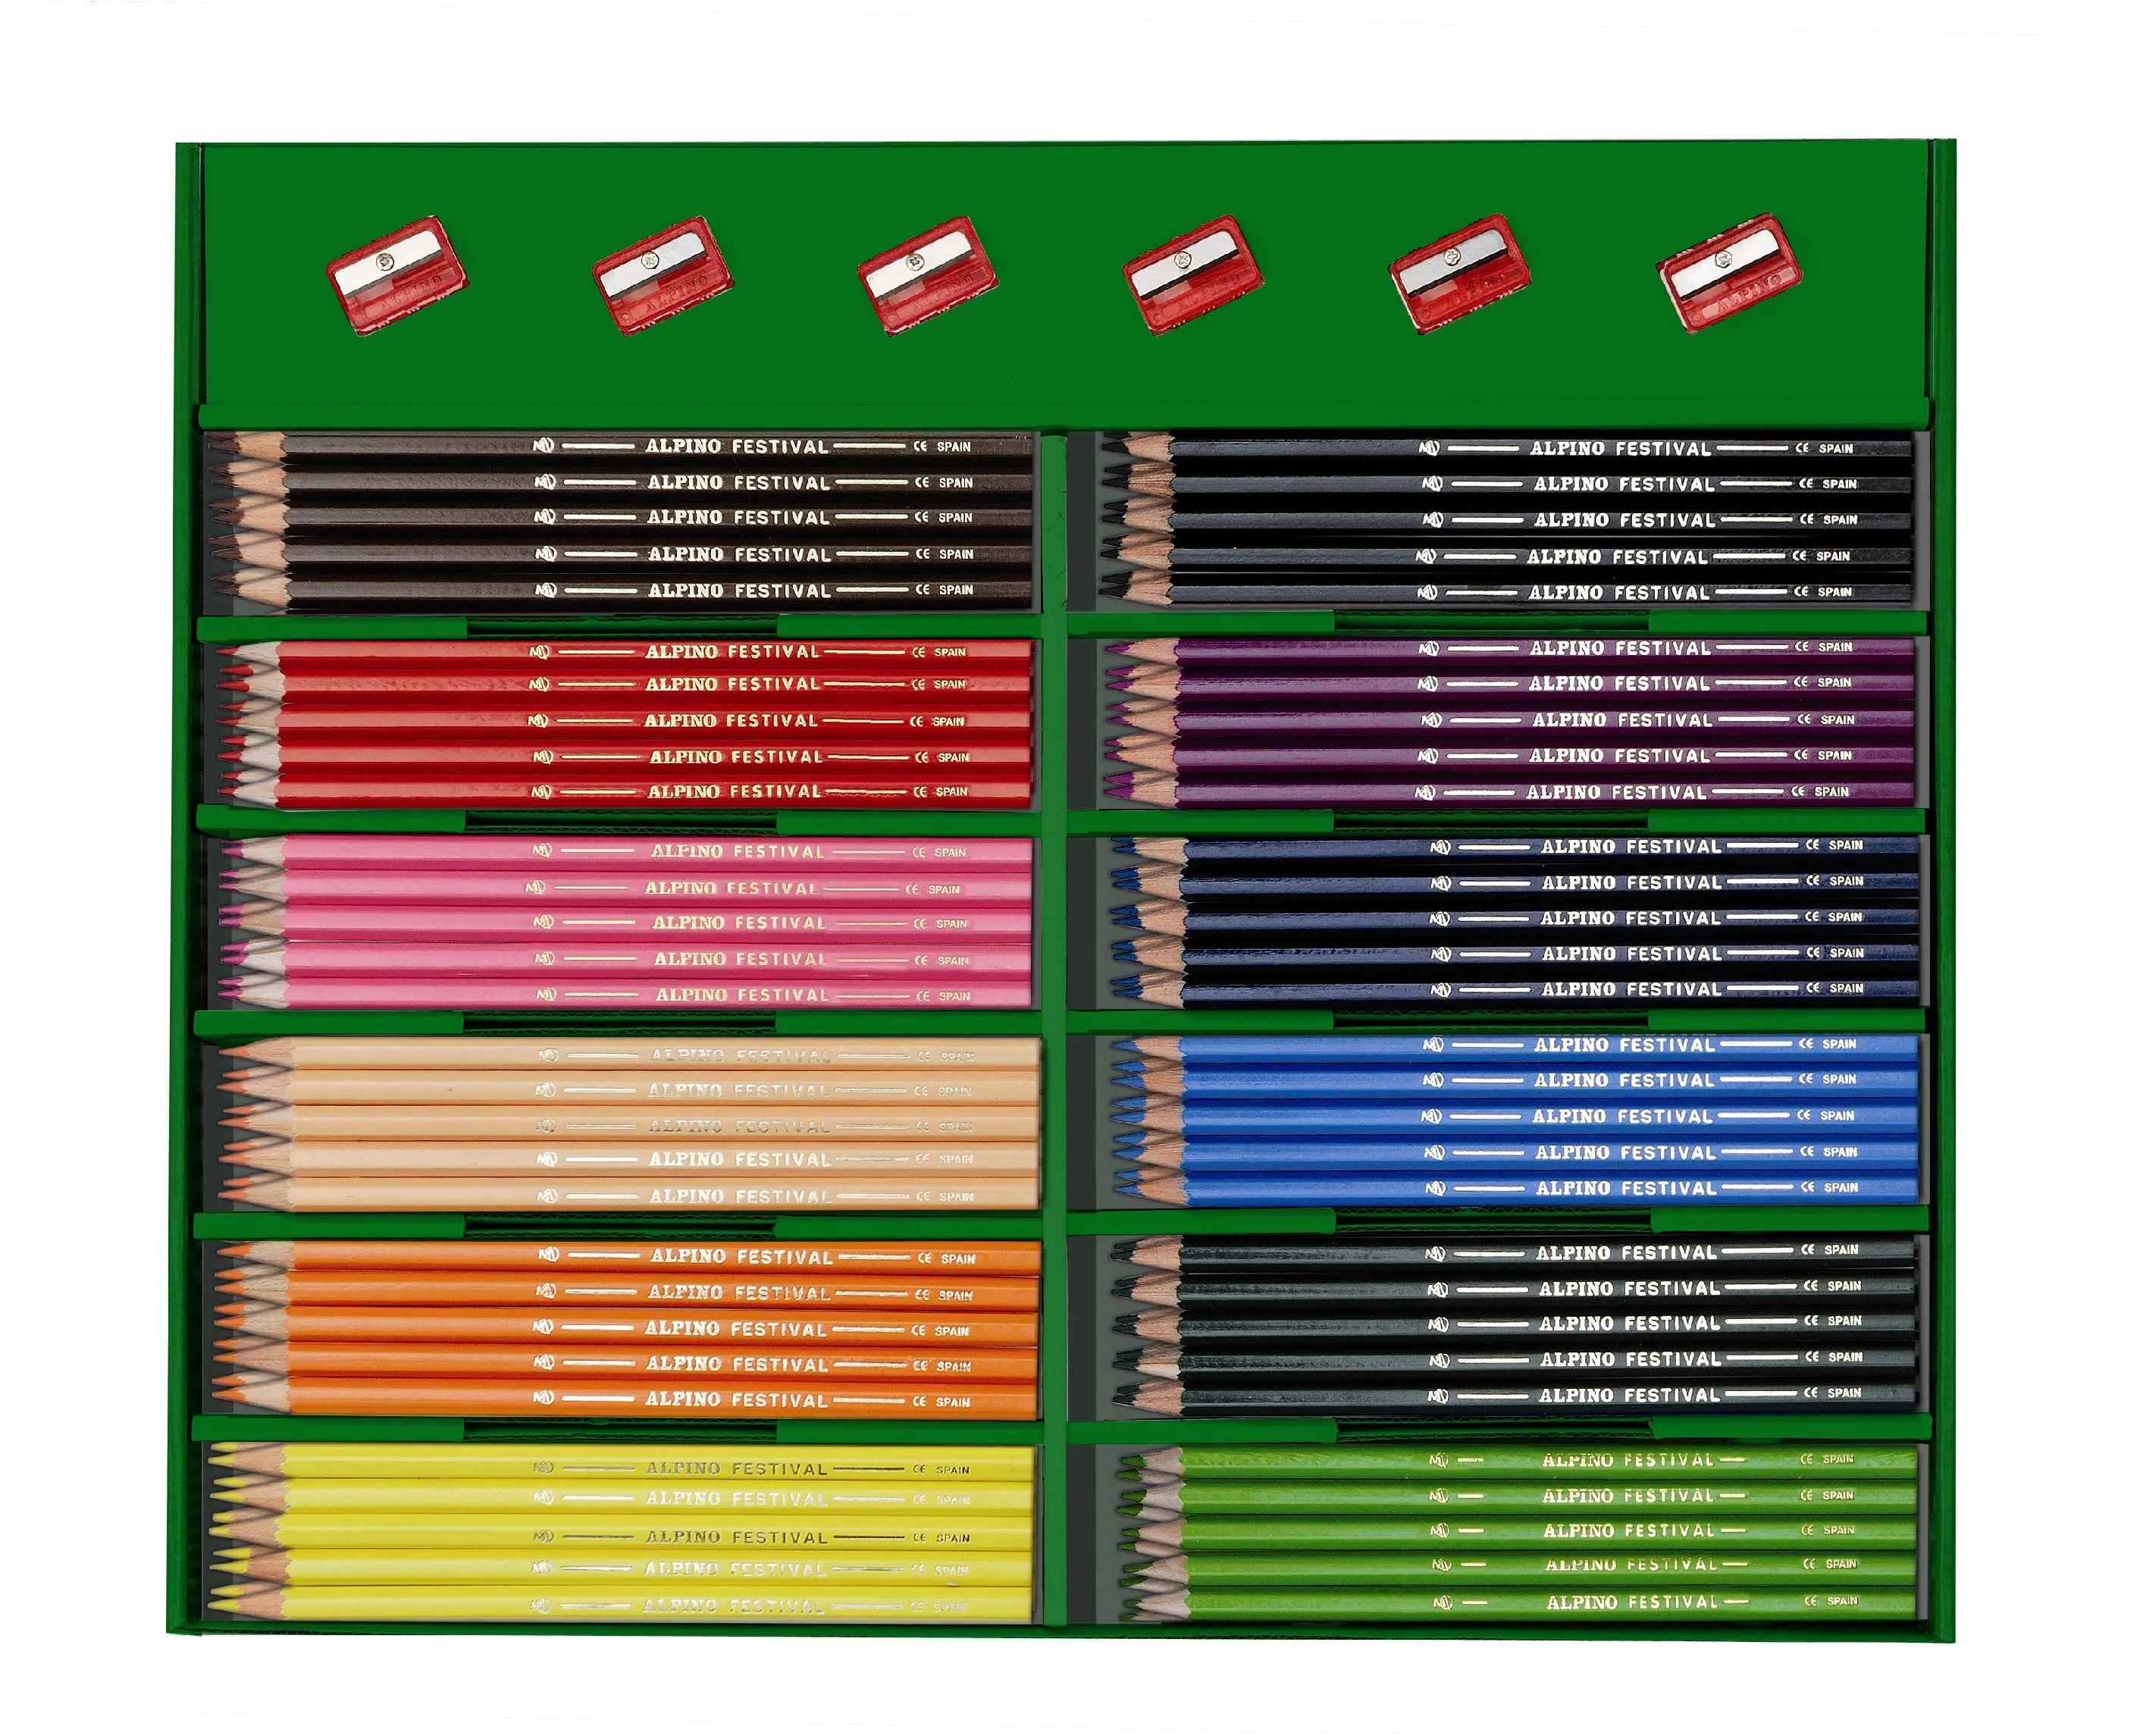 ALPINO Balenie farebných ceruziek Alpino Festival 288ks 1×1 set, farebné ceruzky